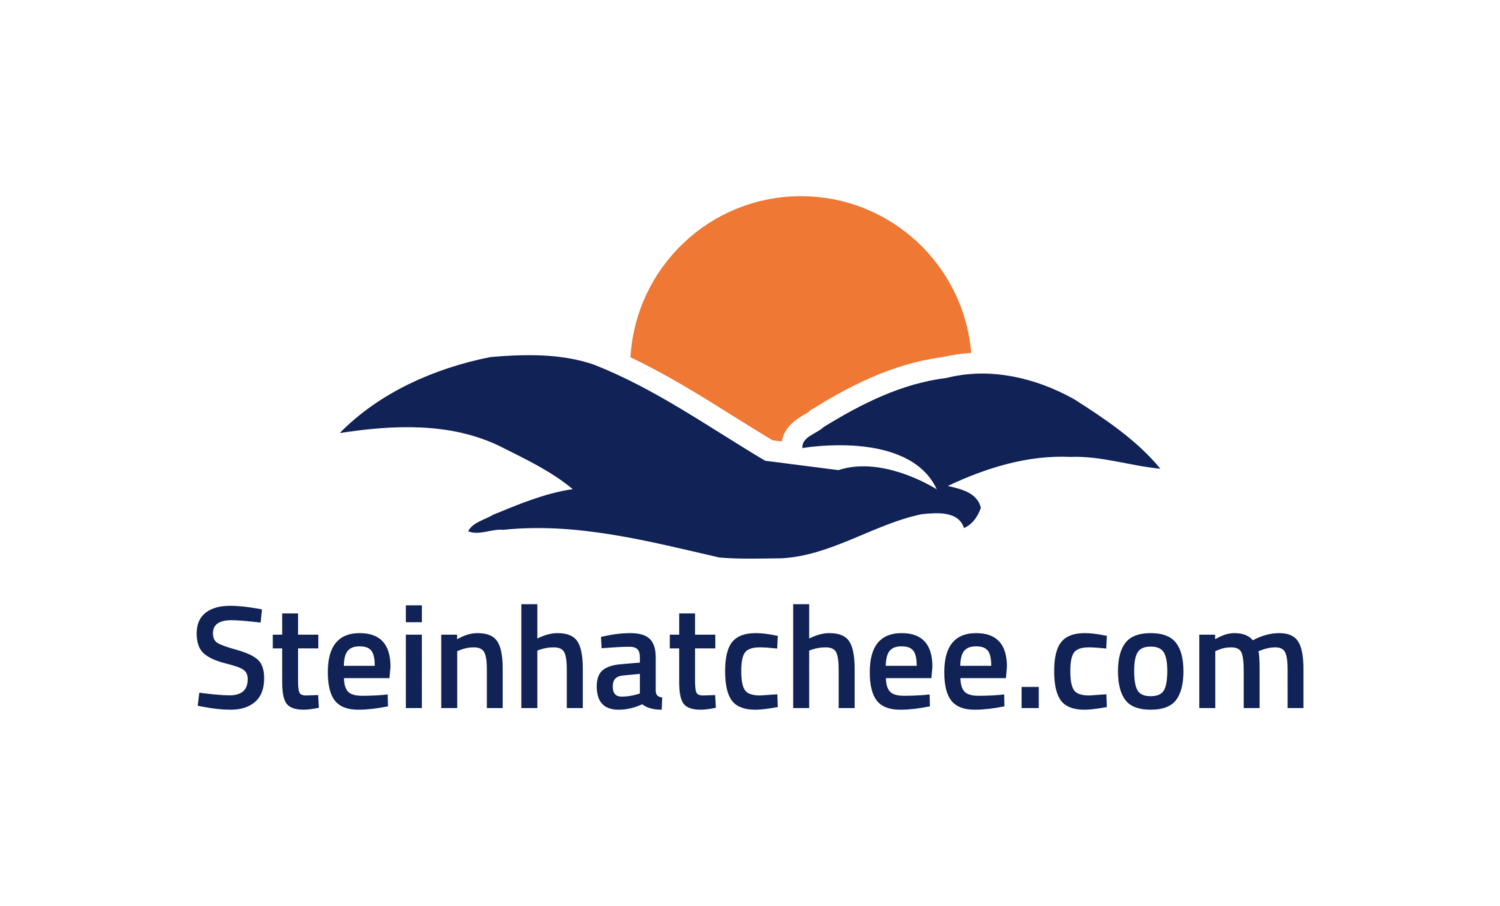 Steinhatchee.com